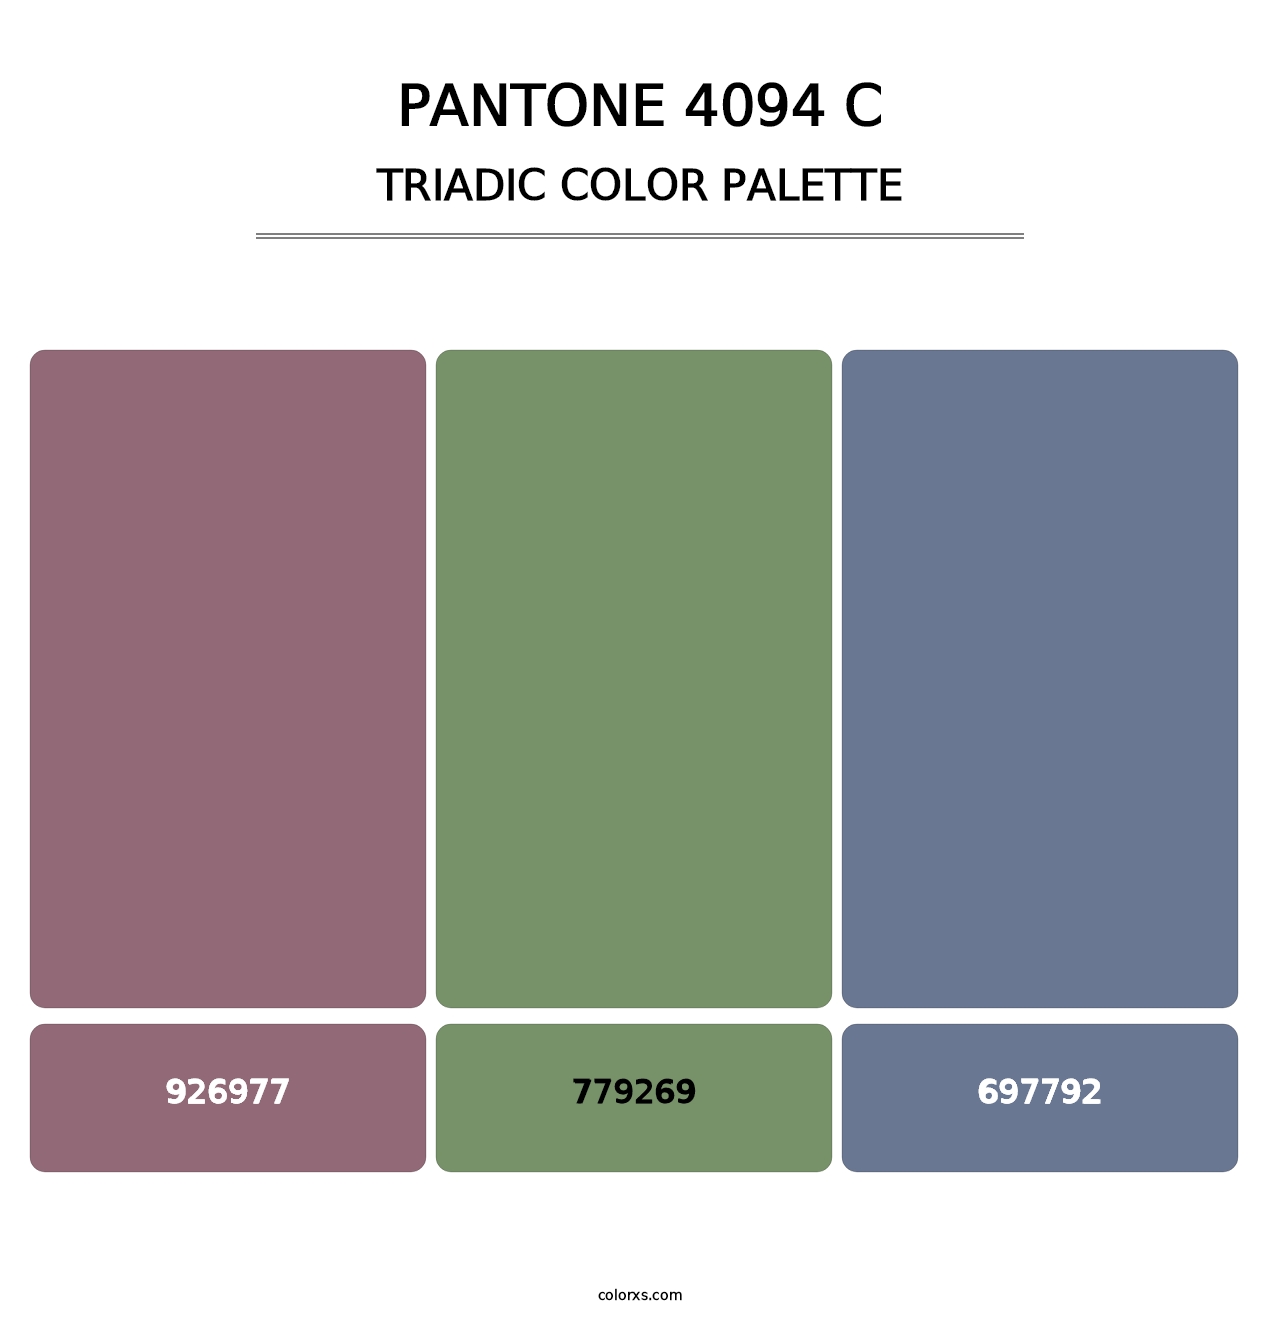 PANTONE 4094 C - Triadic Color Palette